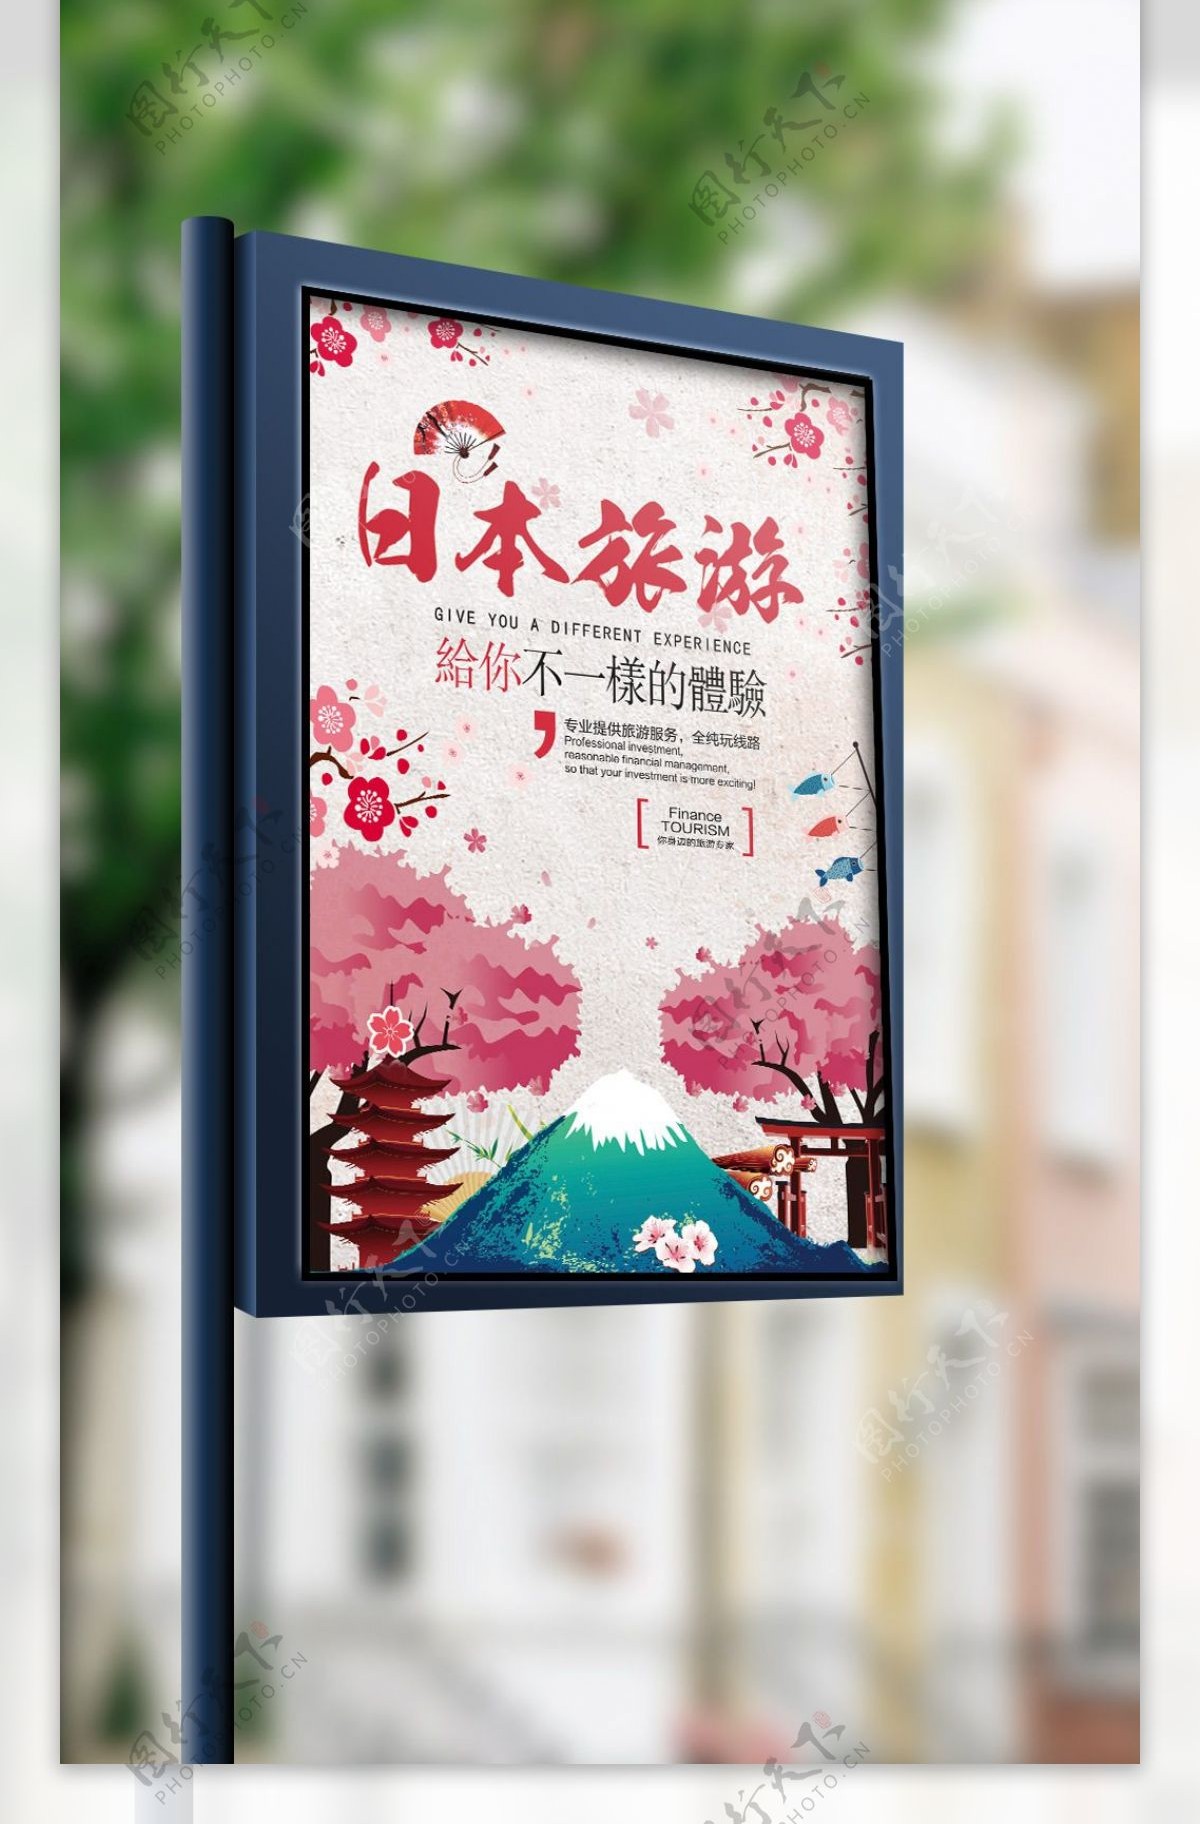 粉色樱花日本旅游宣传海报